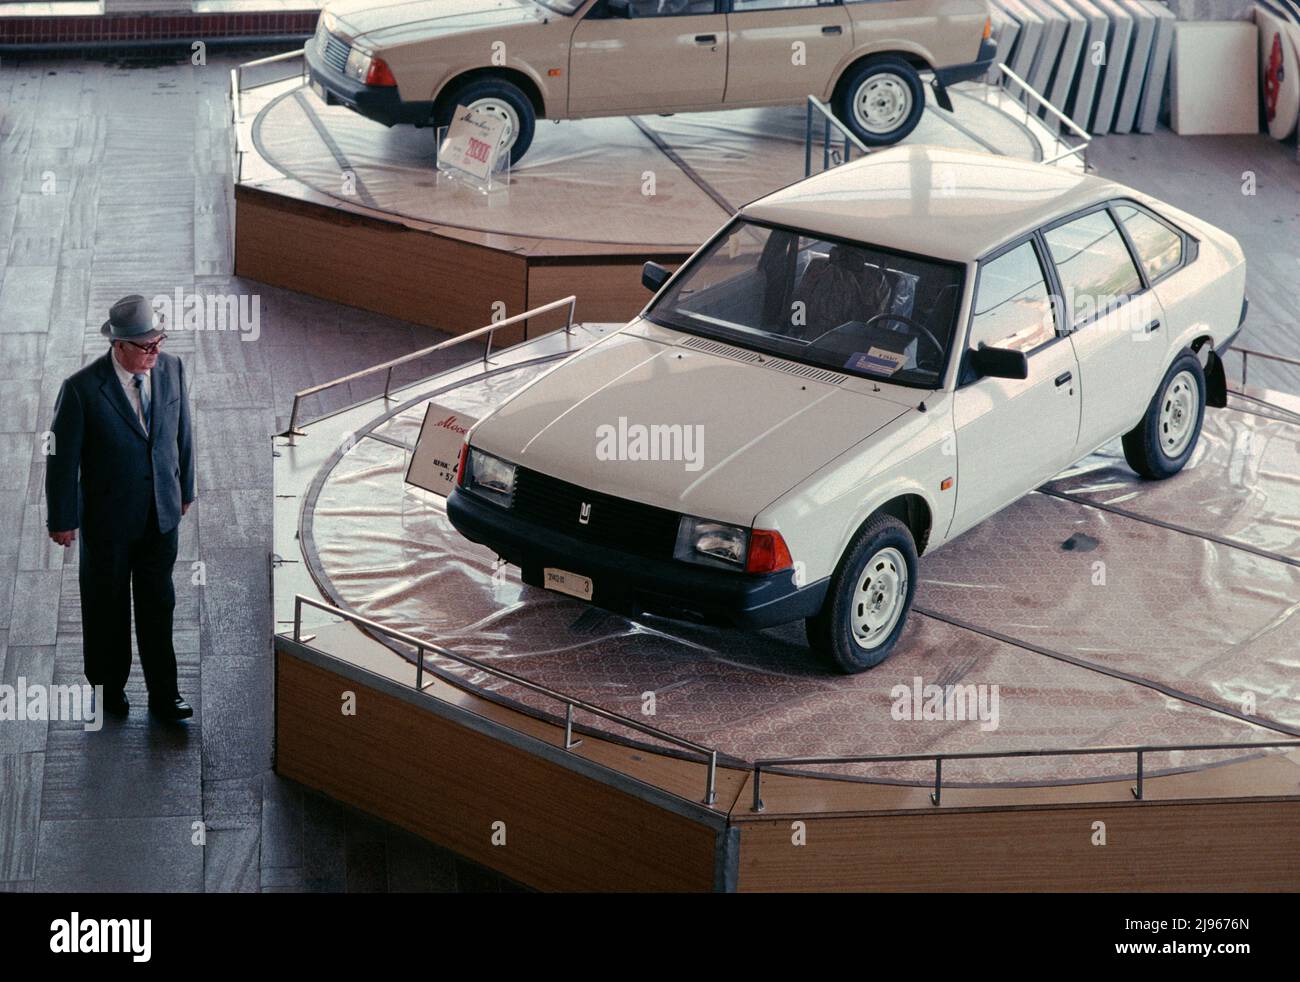 Moscú Auto showroom durante los últimos meses de la Unión Soviética. Un hombre mira el nuevo Moskvitch-2141 soviético, conocido como el Aleko. La tracción delantera 2141 fue creada por diseñadores rusos y franceses y producida en la fábrica Moskvitch de Moscú desde 1986 hasta 1997. Foto fecha 16/05/1991. Foto de stock